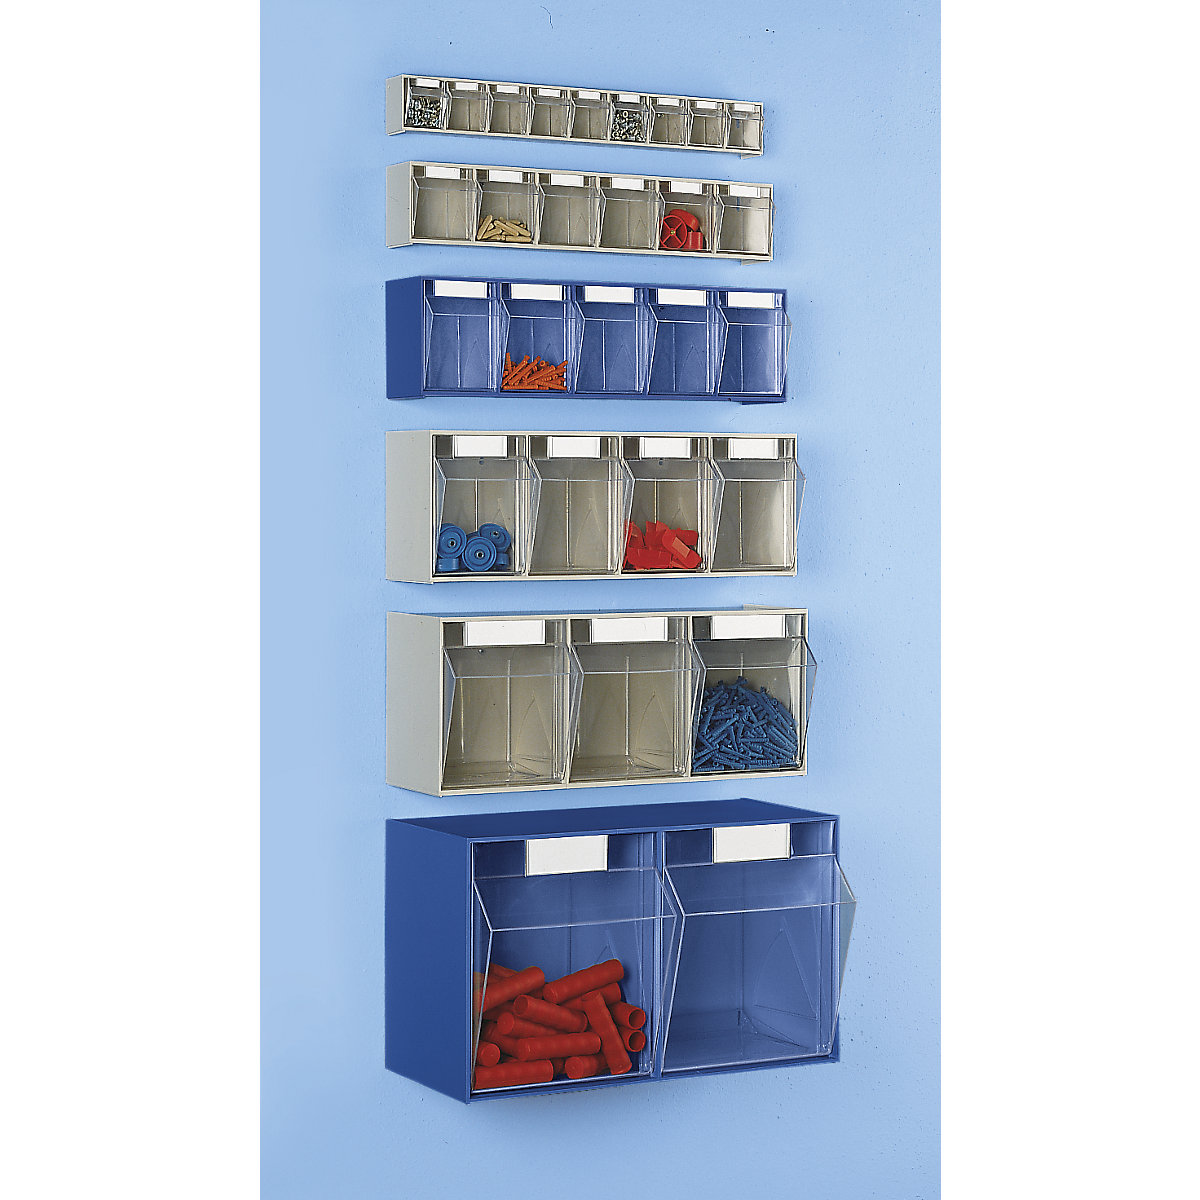 Sustav složivih kutija, VxŠxD kućišta 353 x 600 x 299 mm, 2 kutije, u plavoj boji-1